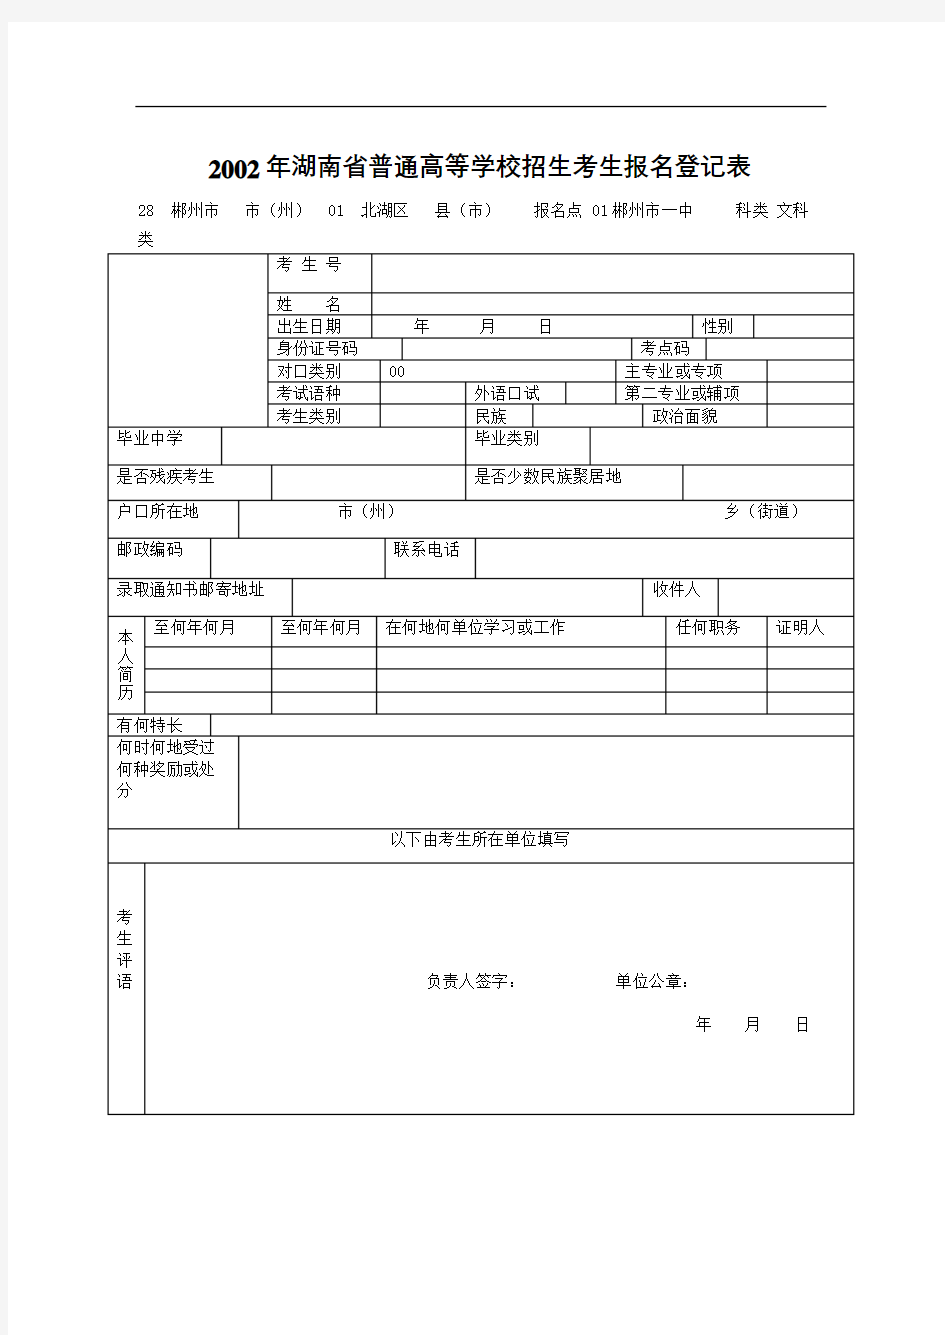 完整版湖南省普通高等学校招生考生报名登记表